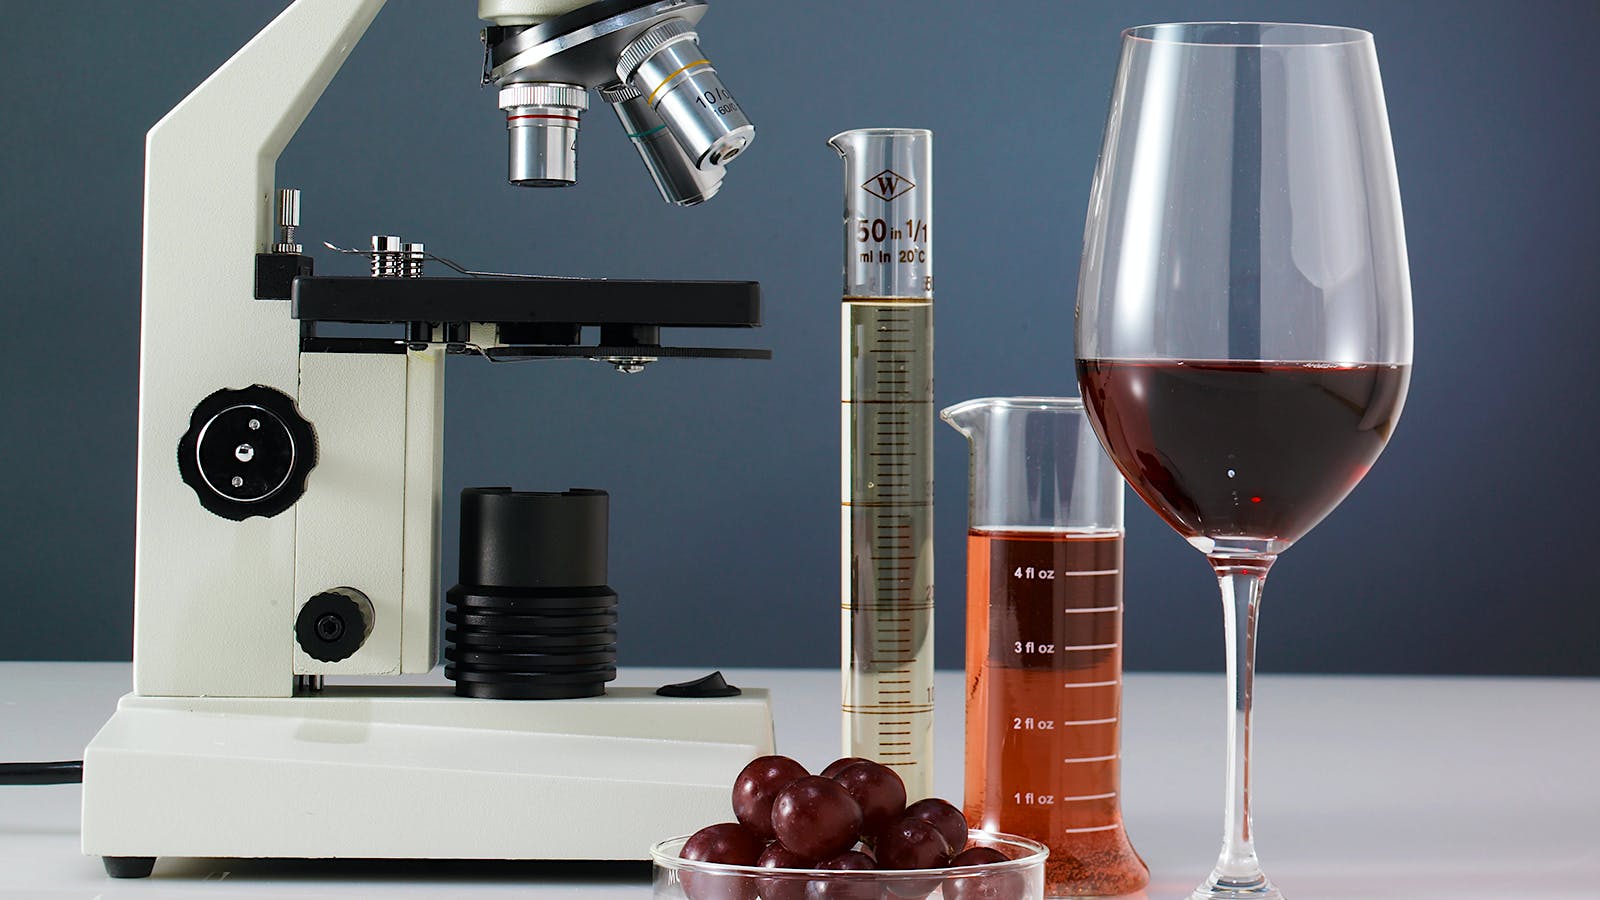 Un bicchiere di vino rosso, delle provette e un microscopio per fare delle analisi sui rapporti tra vino e cancro. Cosa dicono gli studi scientifici?